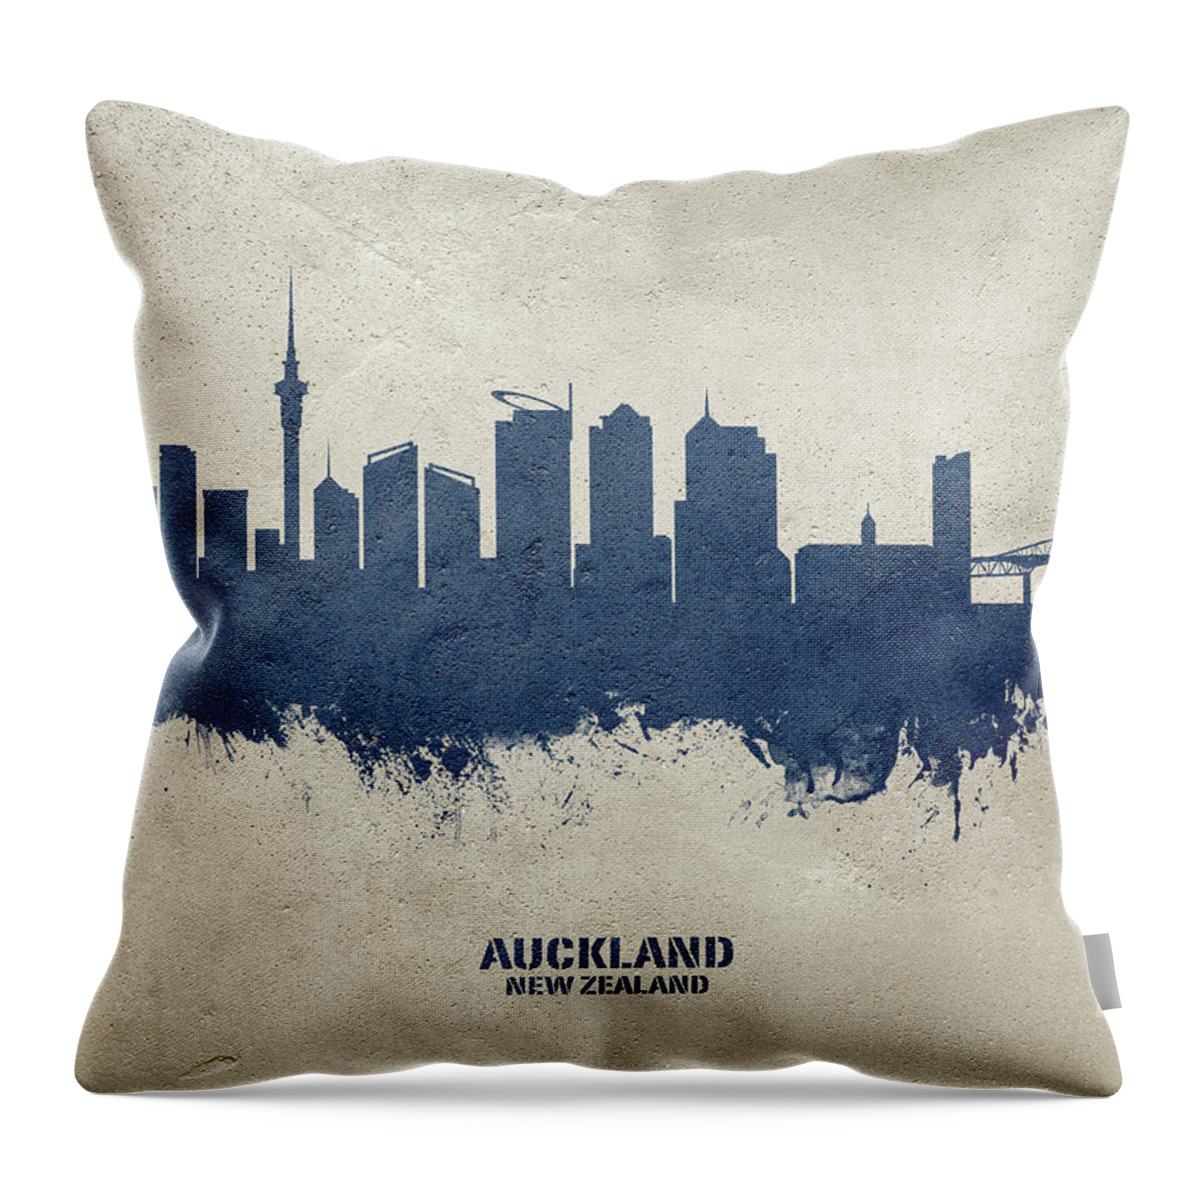 Auckland Throw Pillow featuring the digital art Auckland New Zealand Skyline #30 by Michael Tompsett